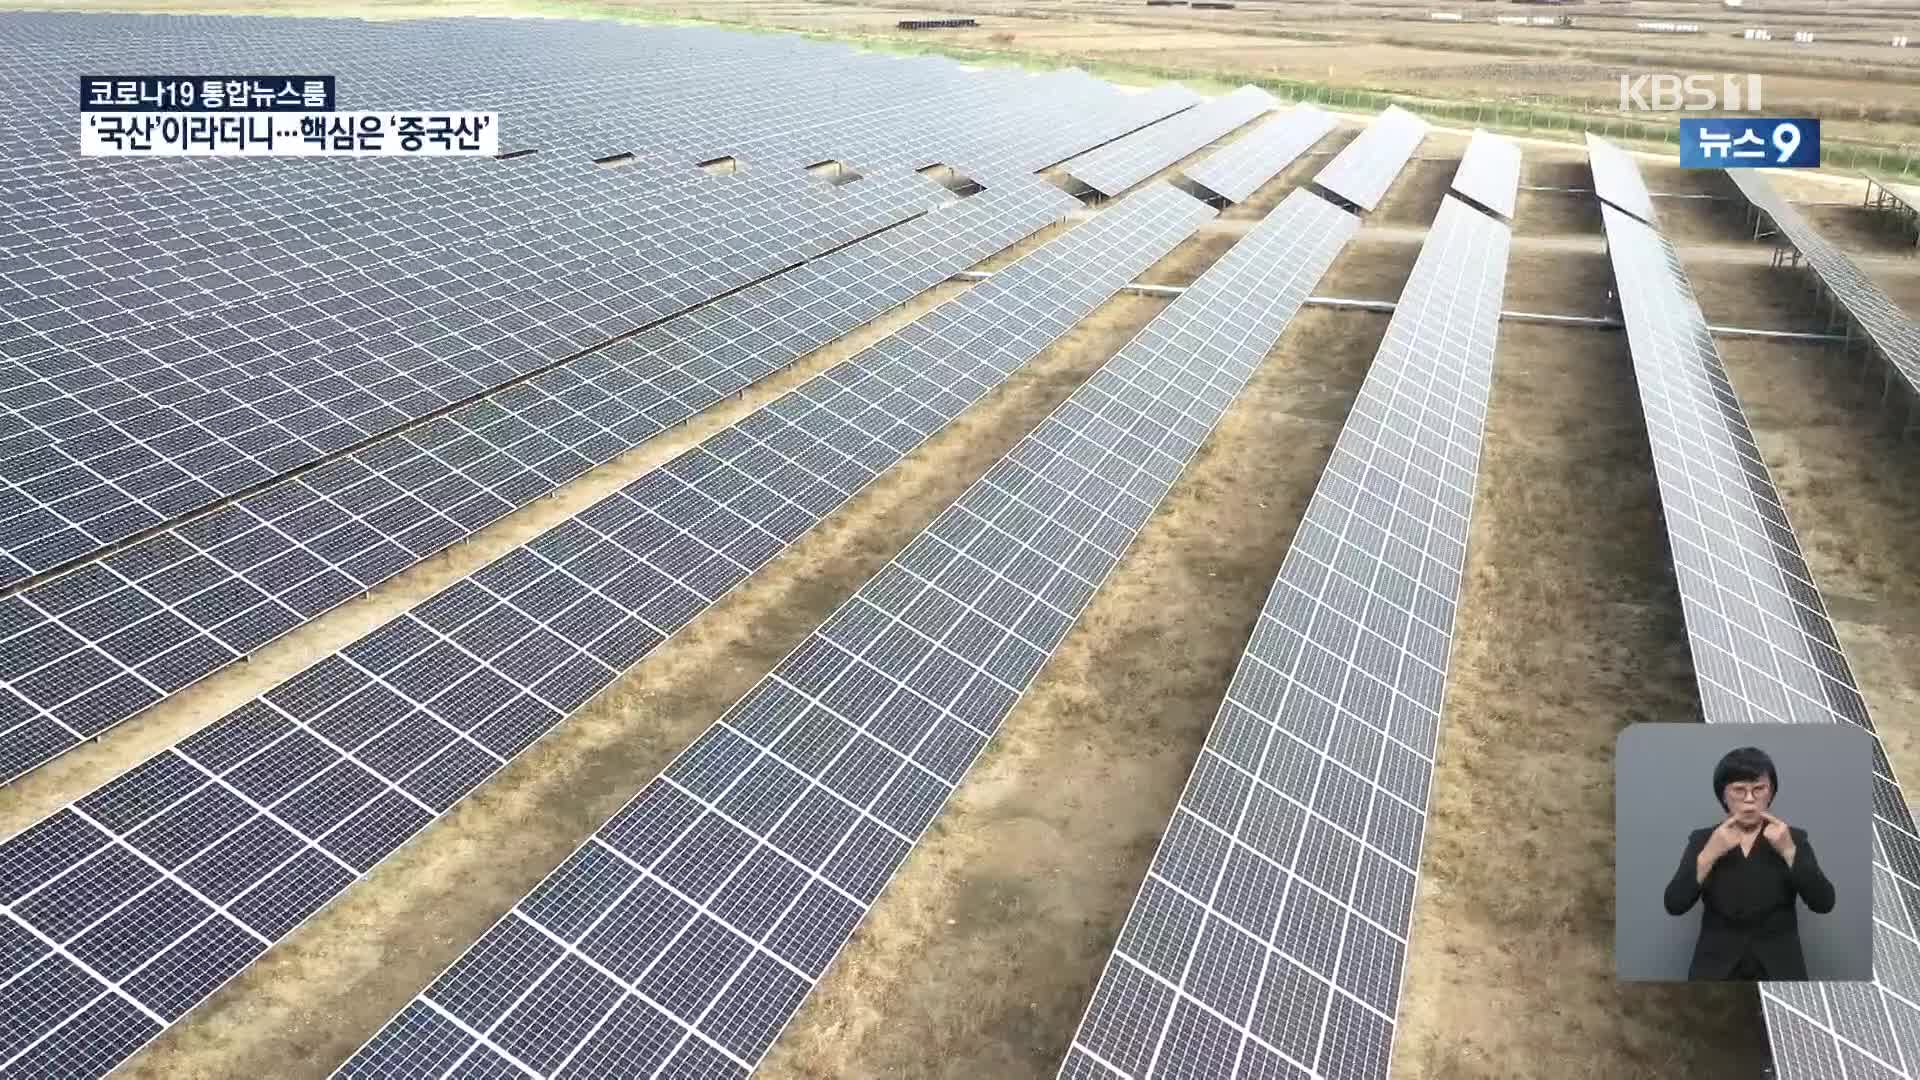 그린뉴딜에도 태양광산업 ‘흔들’?…“국산 70%” 알고보니